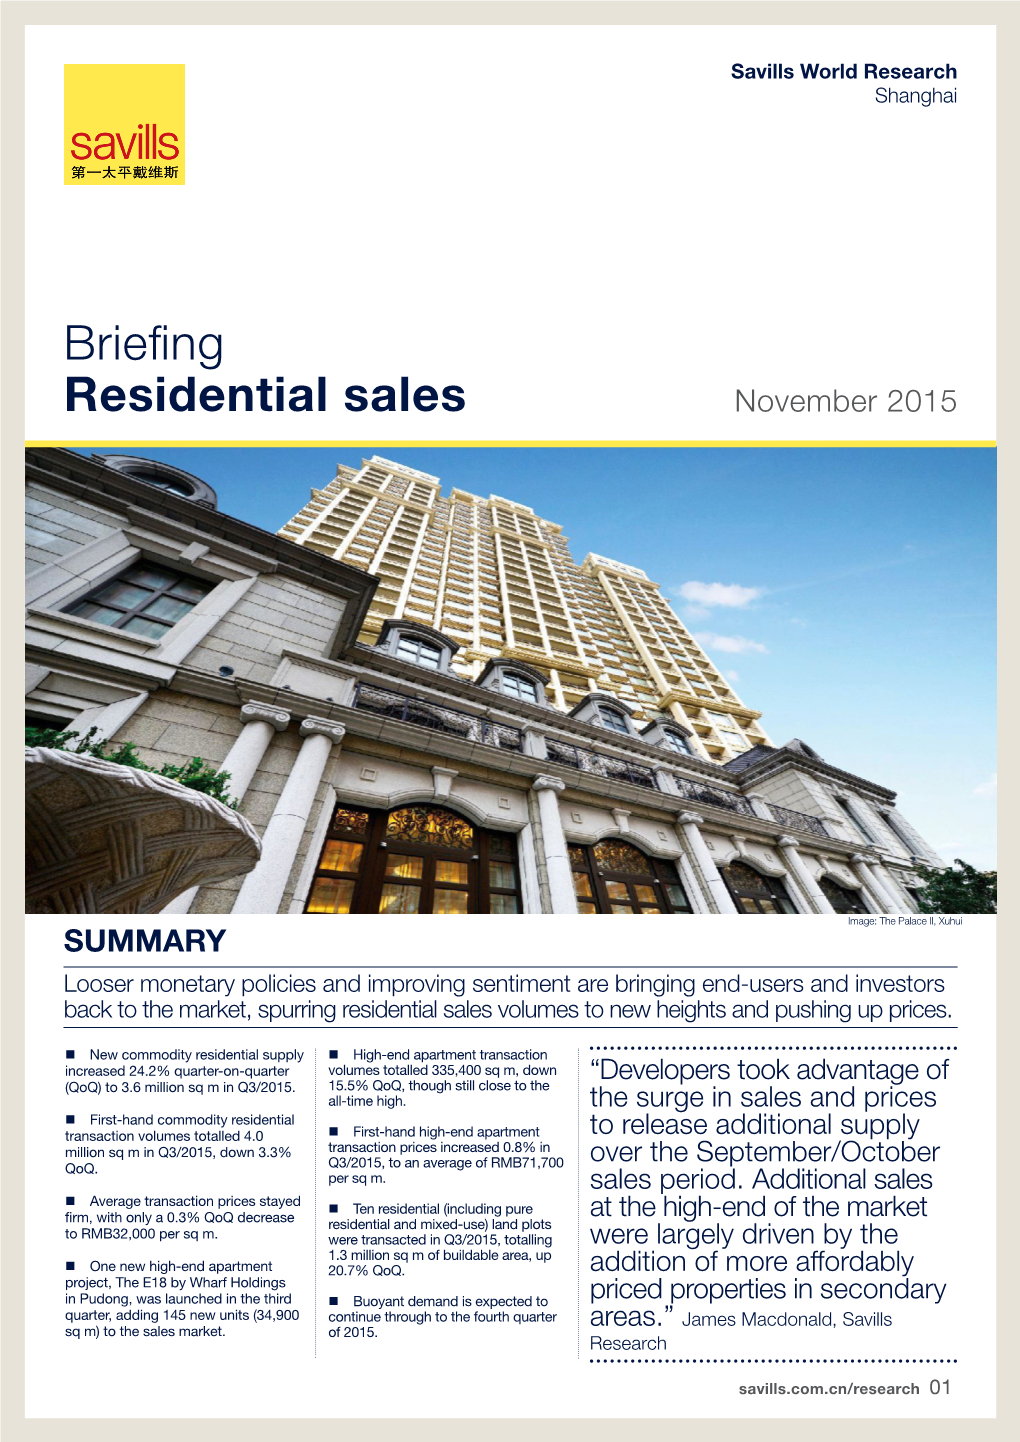 Briefing Residential Sales November 2015